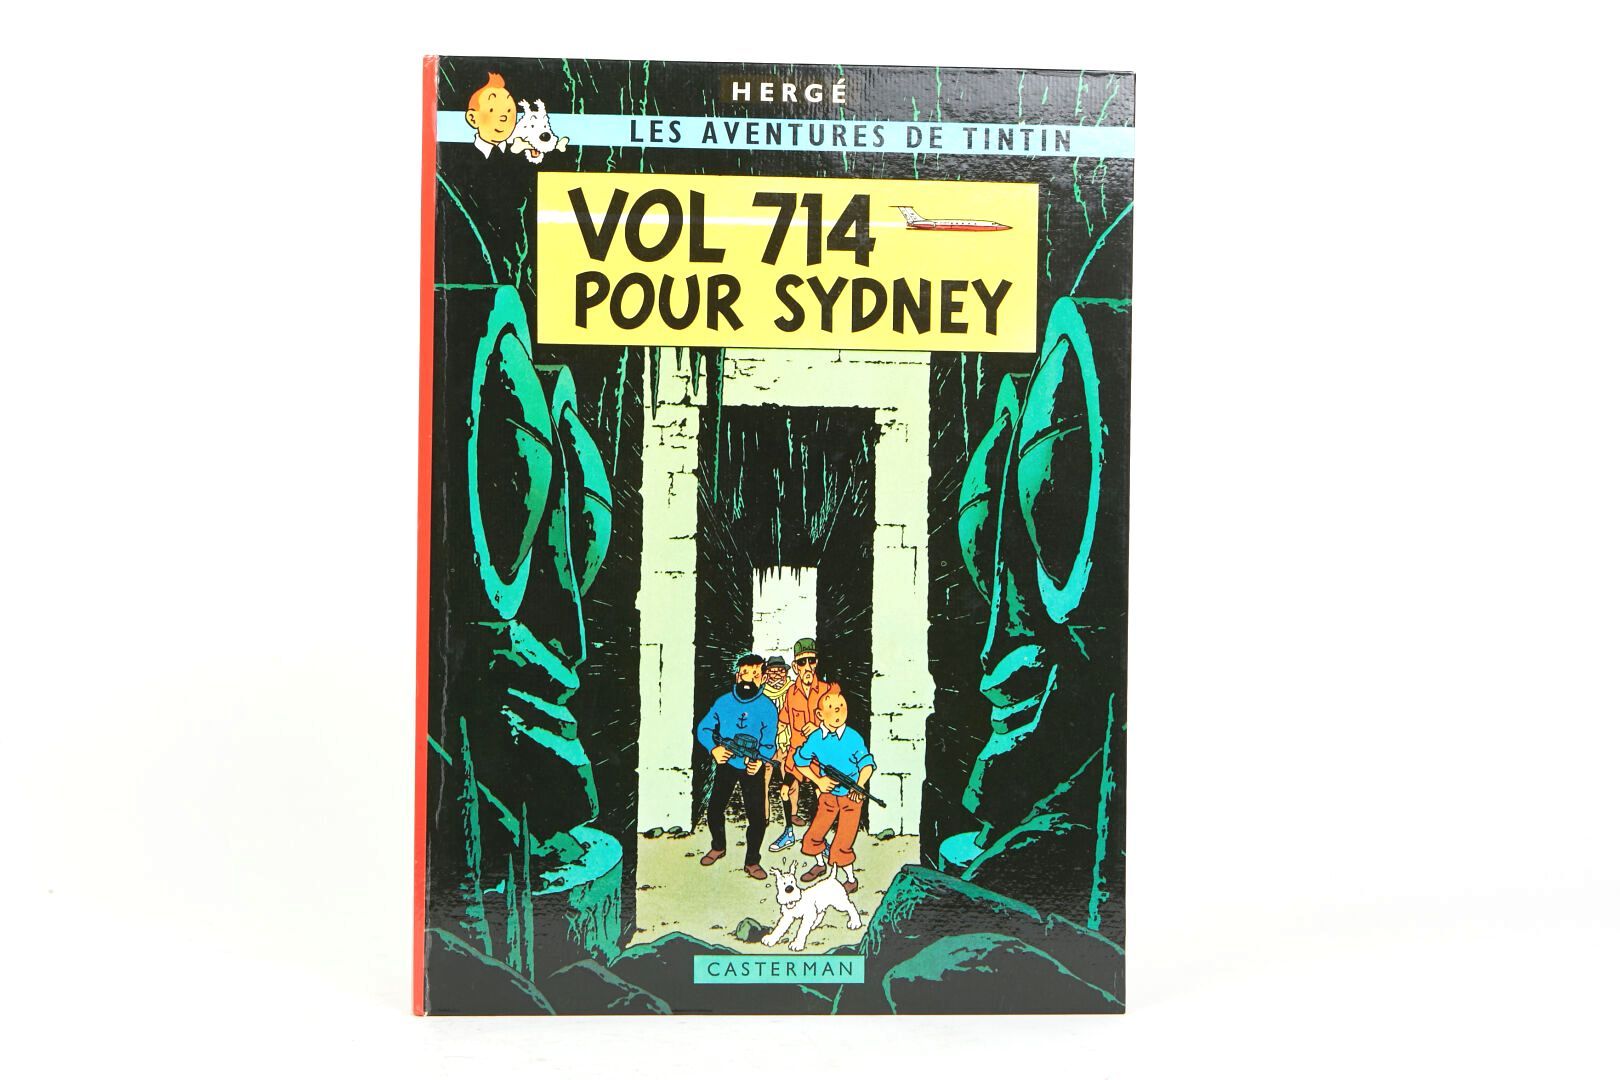 Null "Vol 714 pour Sydney" 1968
Page 42 "Allez-vous me dire dans quelle caverne &hellip;